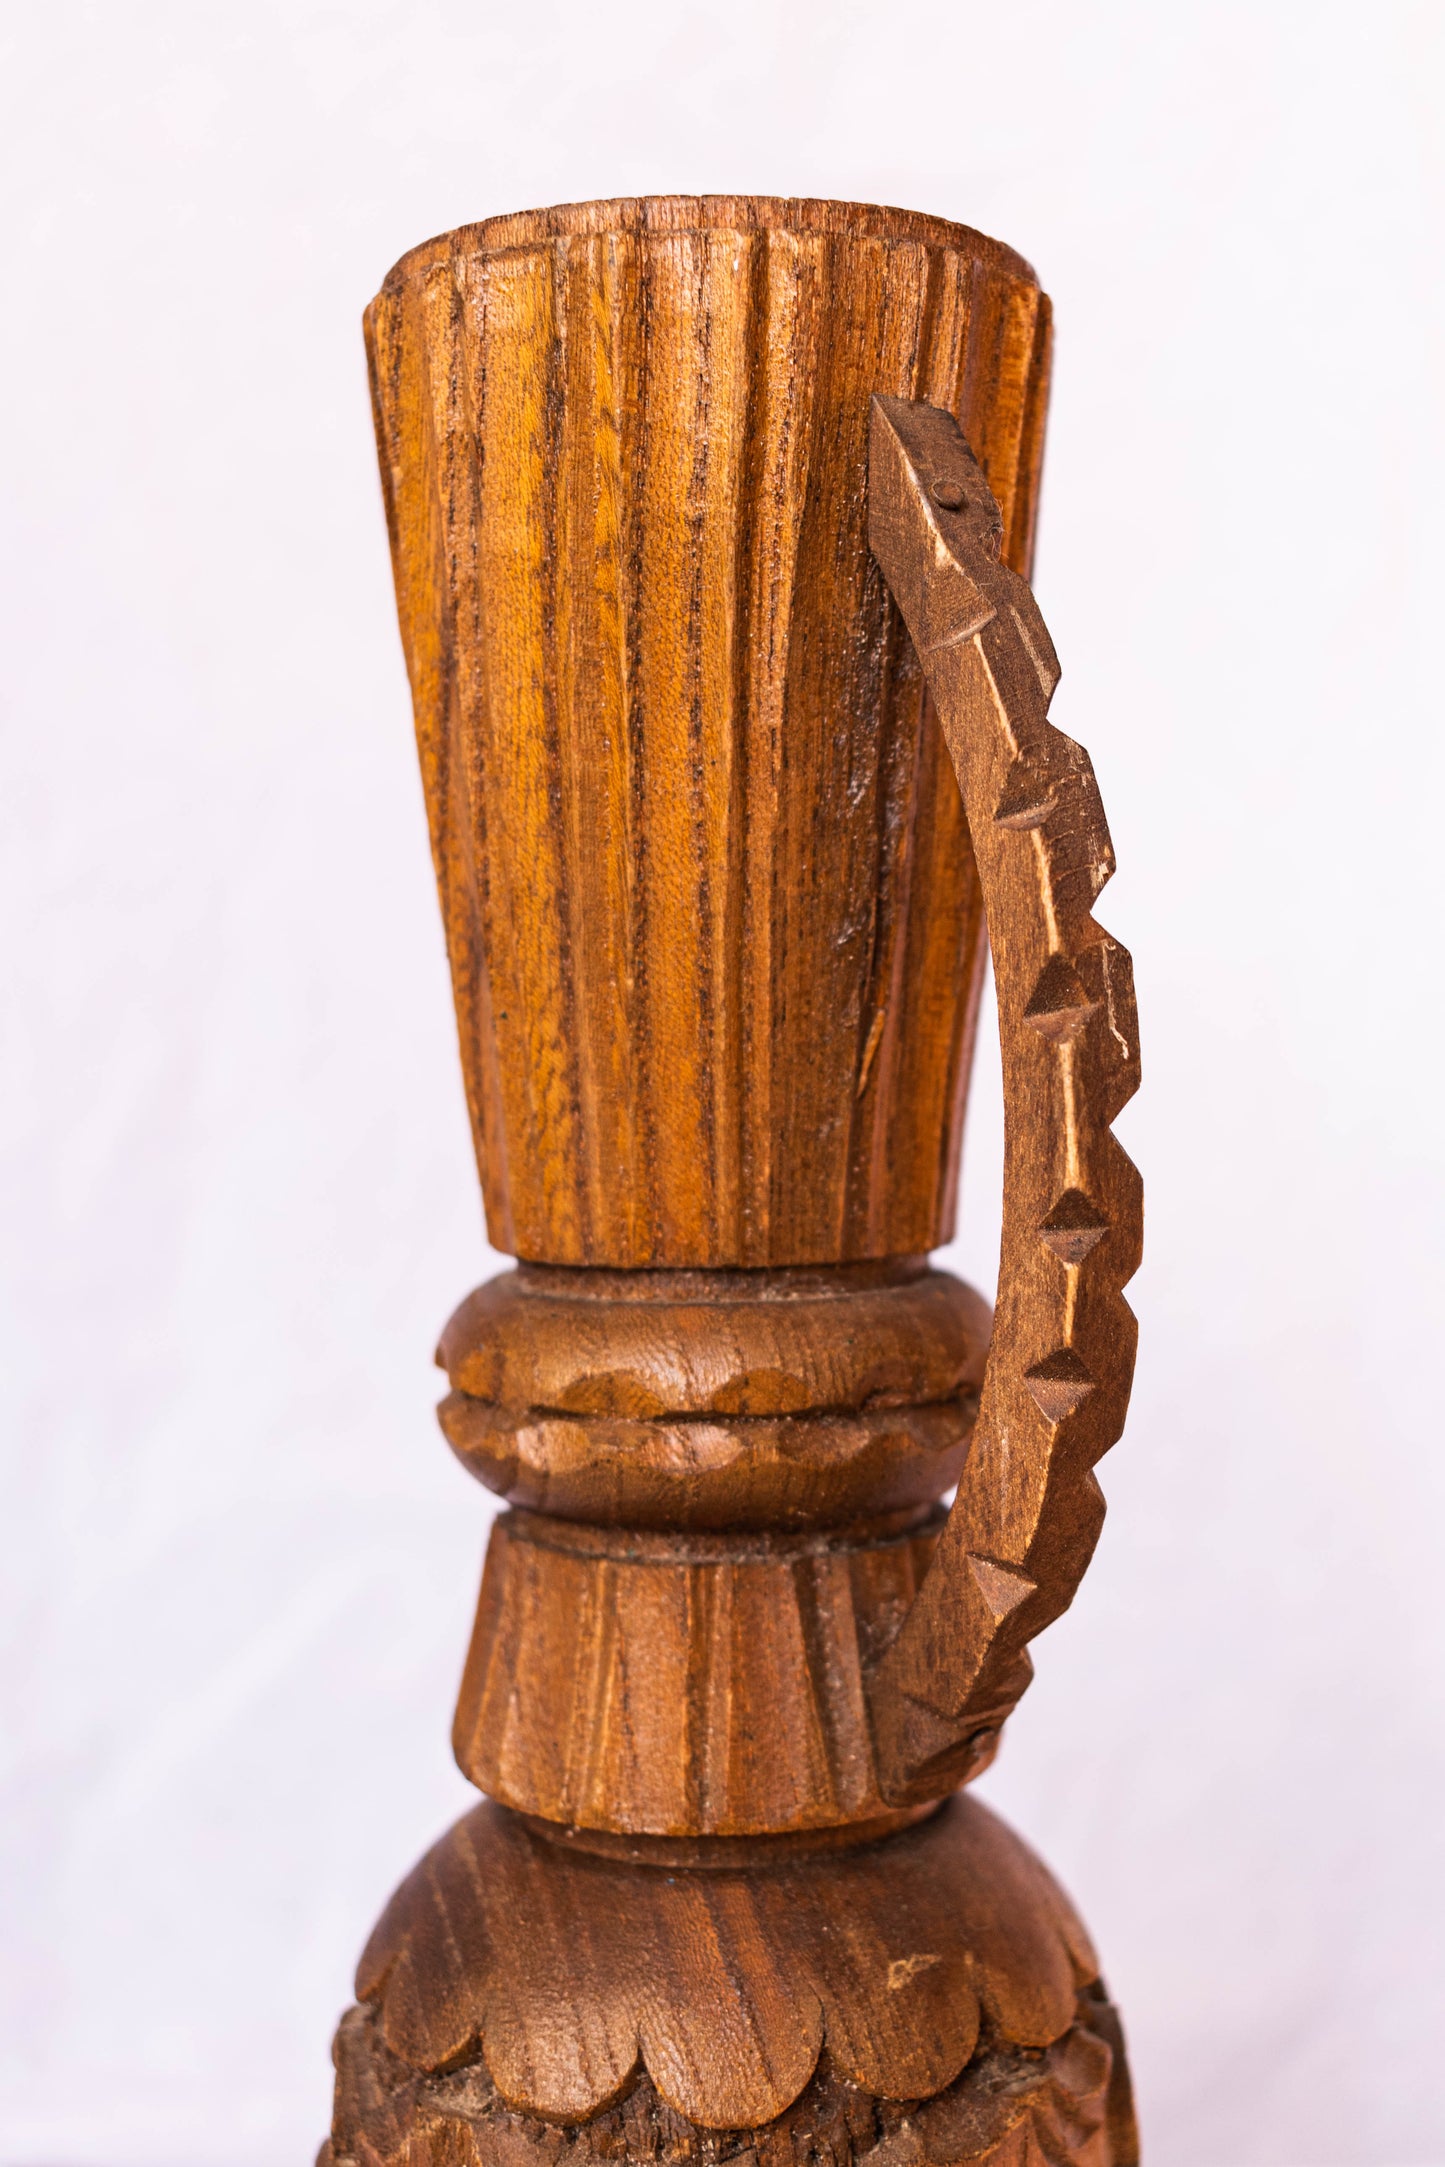 NEW IN! Wooden vase